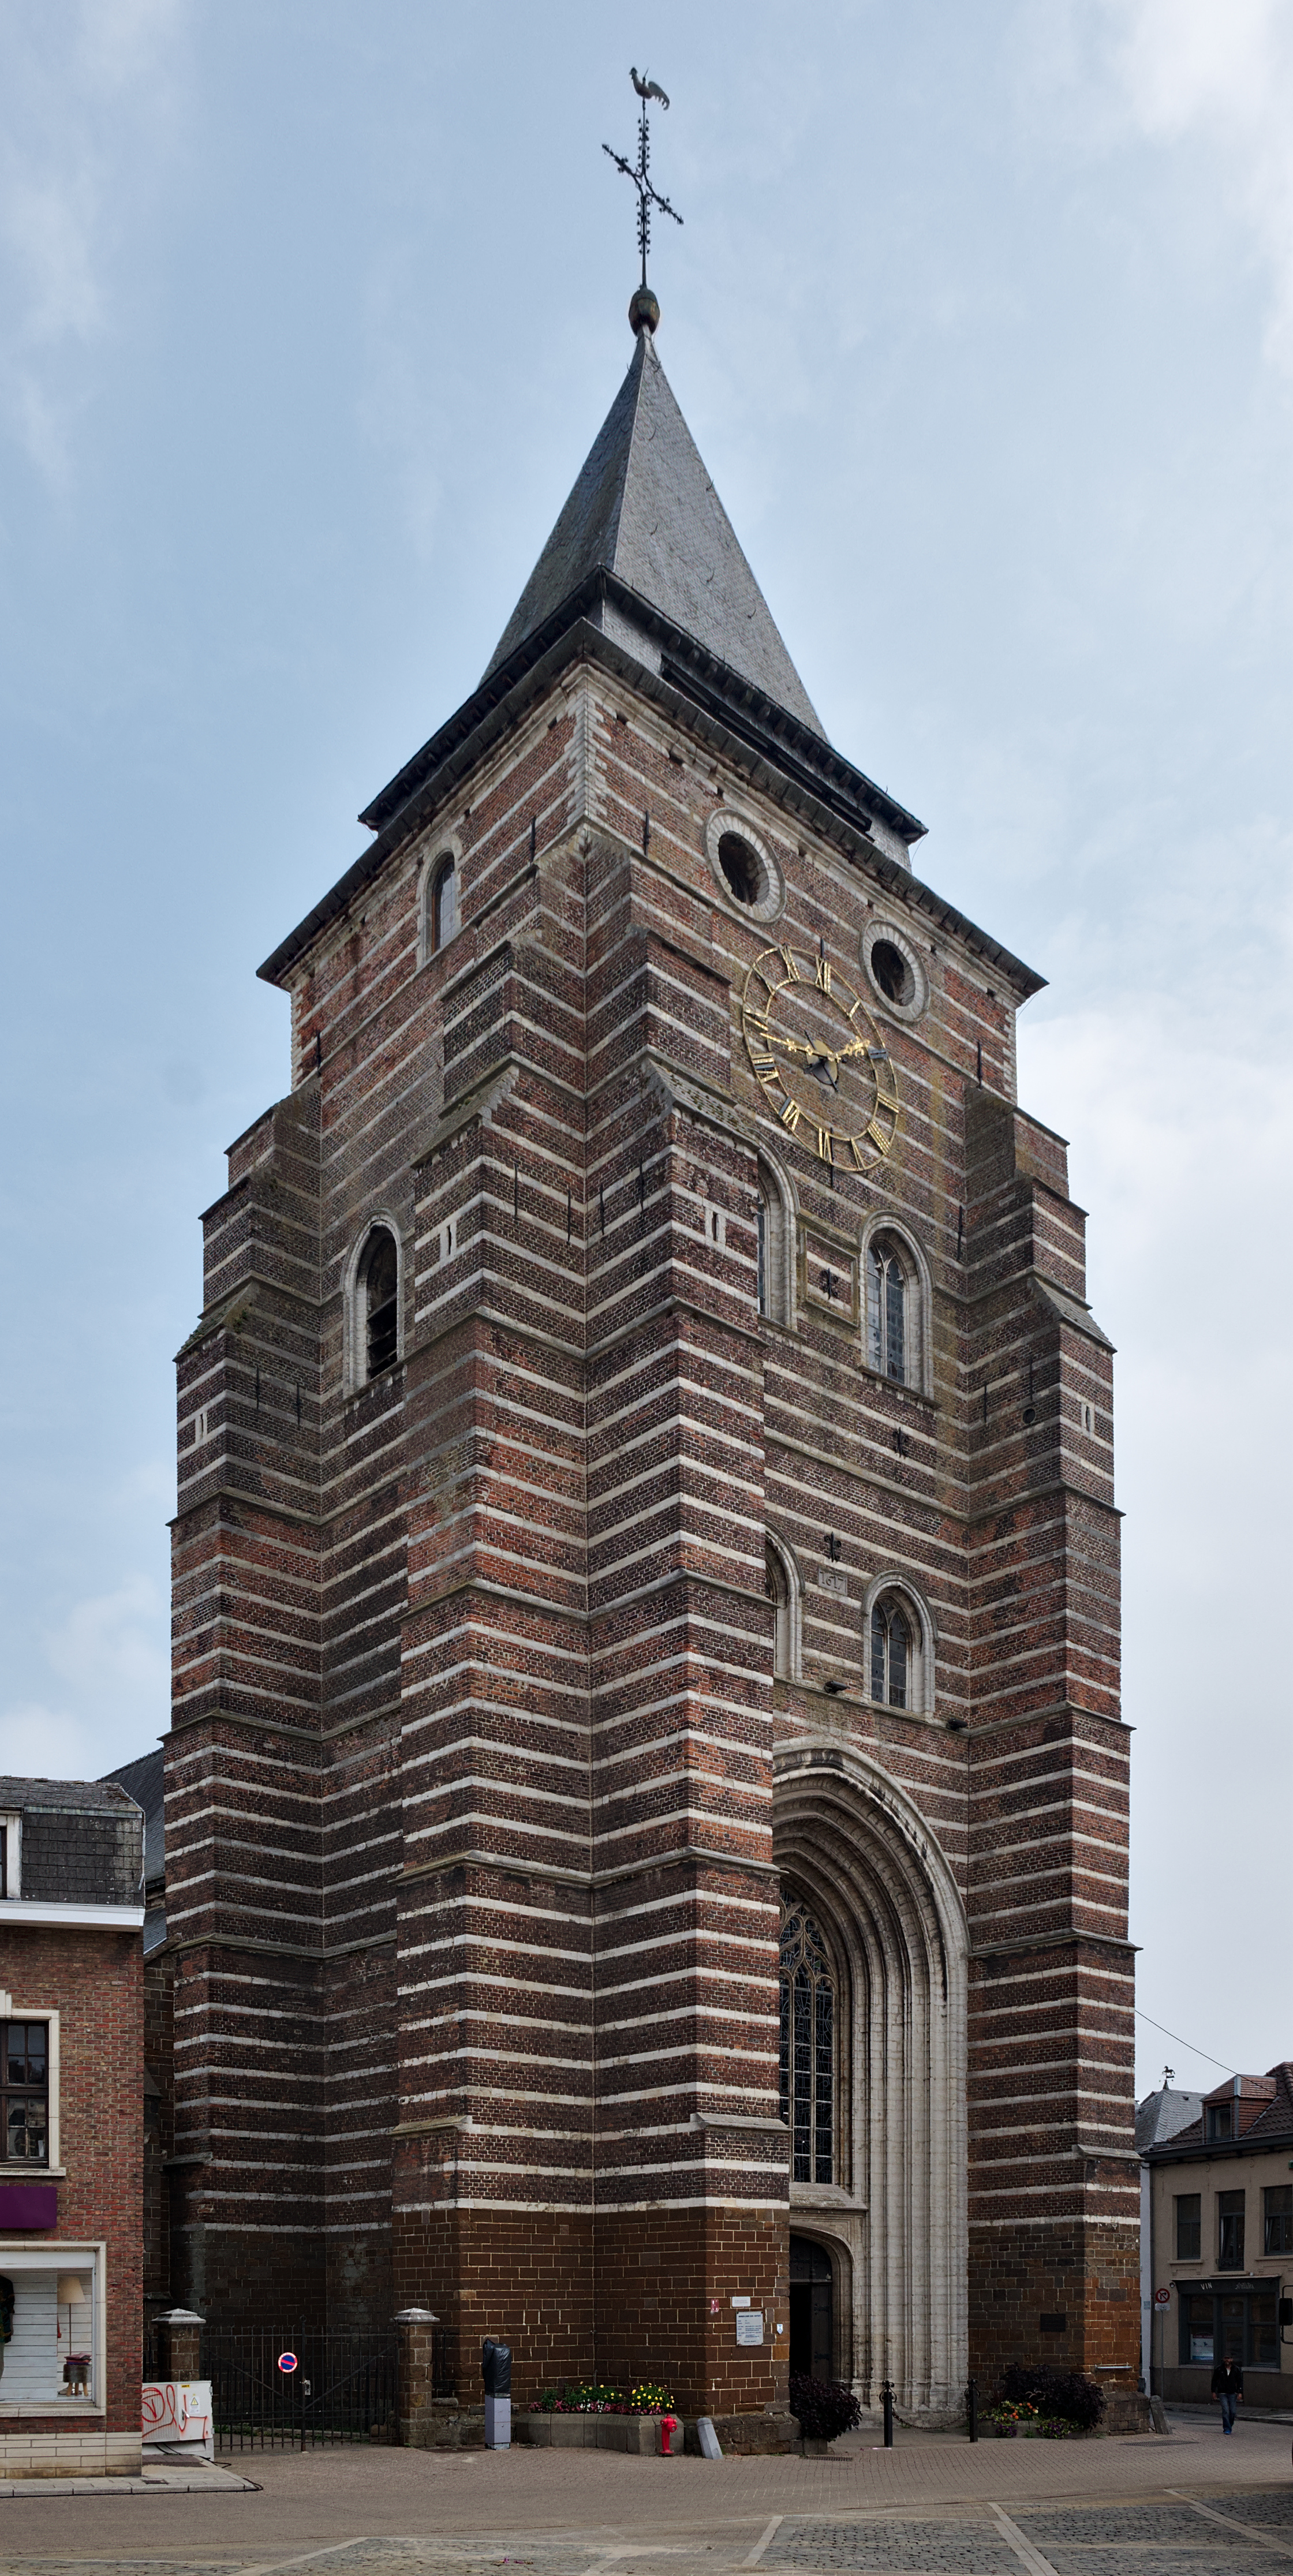 Église Saint-Jean-Baptiste in Wavre, Belgium (DSCF7560)